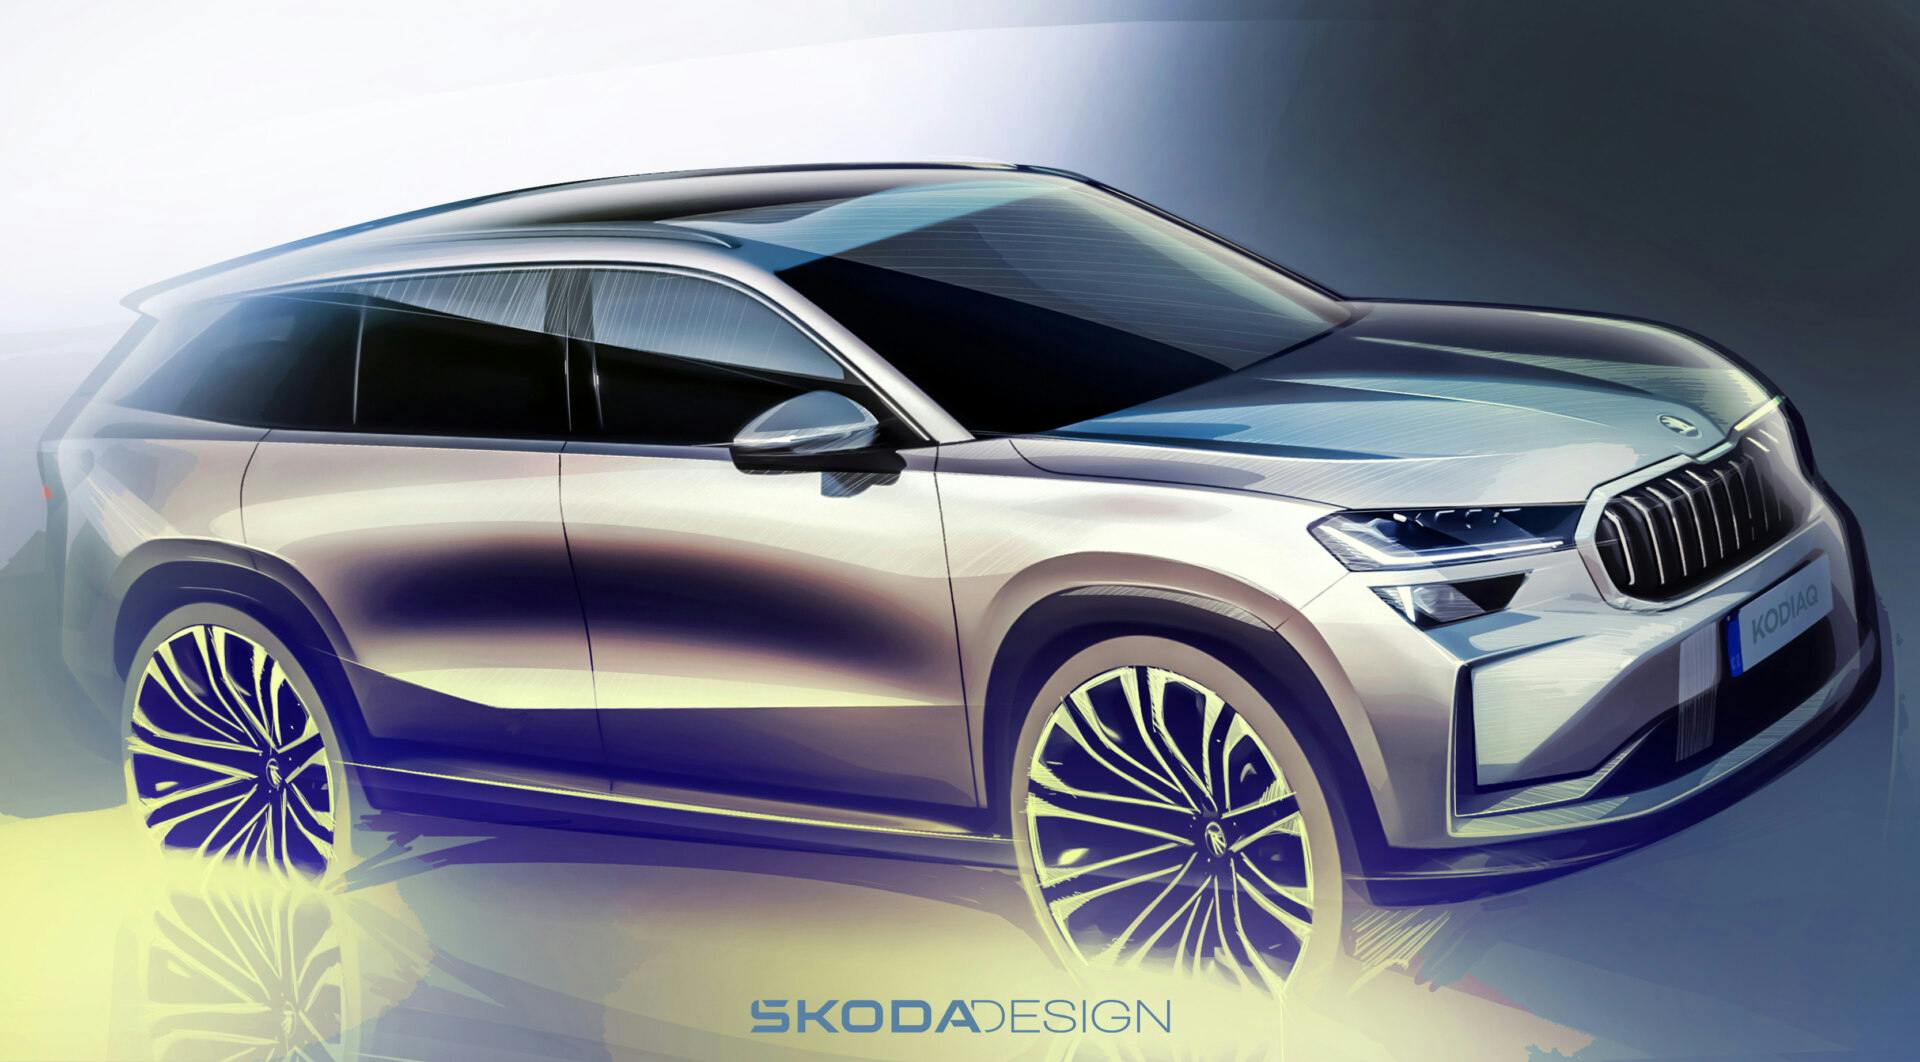 Škoda Auto odhaľuje skice dizajnu exteriéru nového modelu Kodiaq